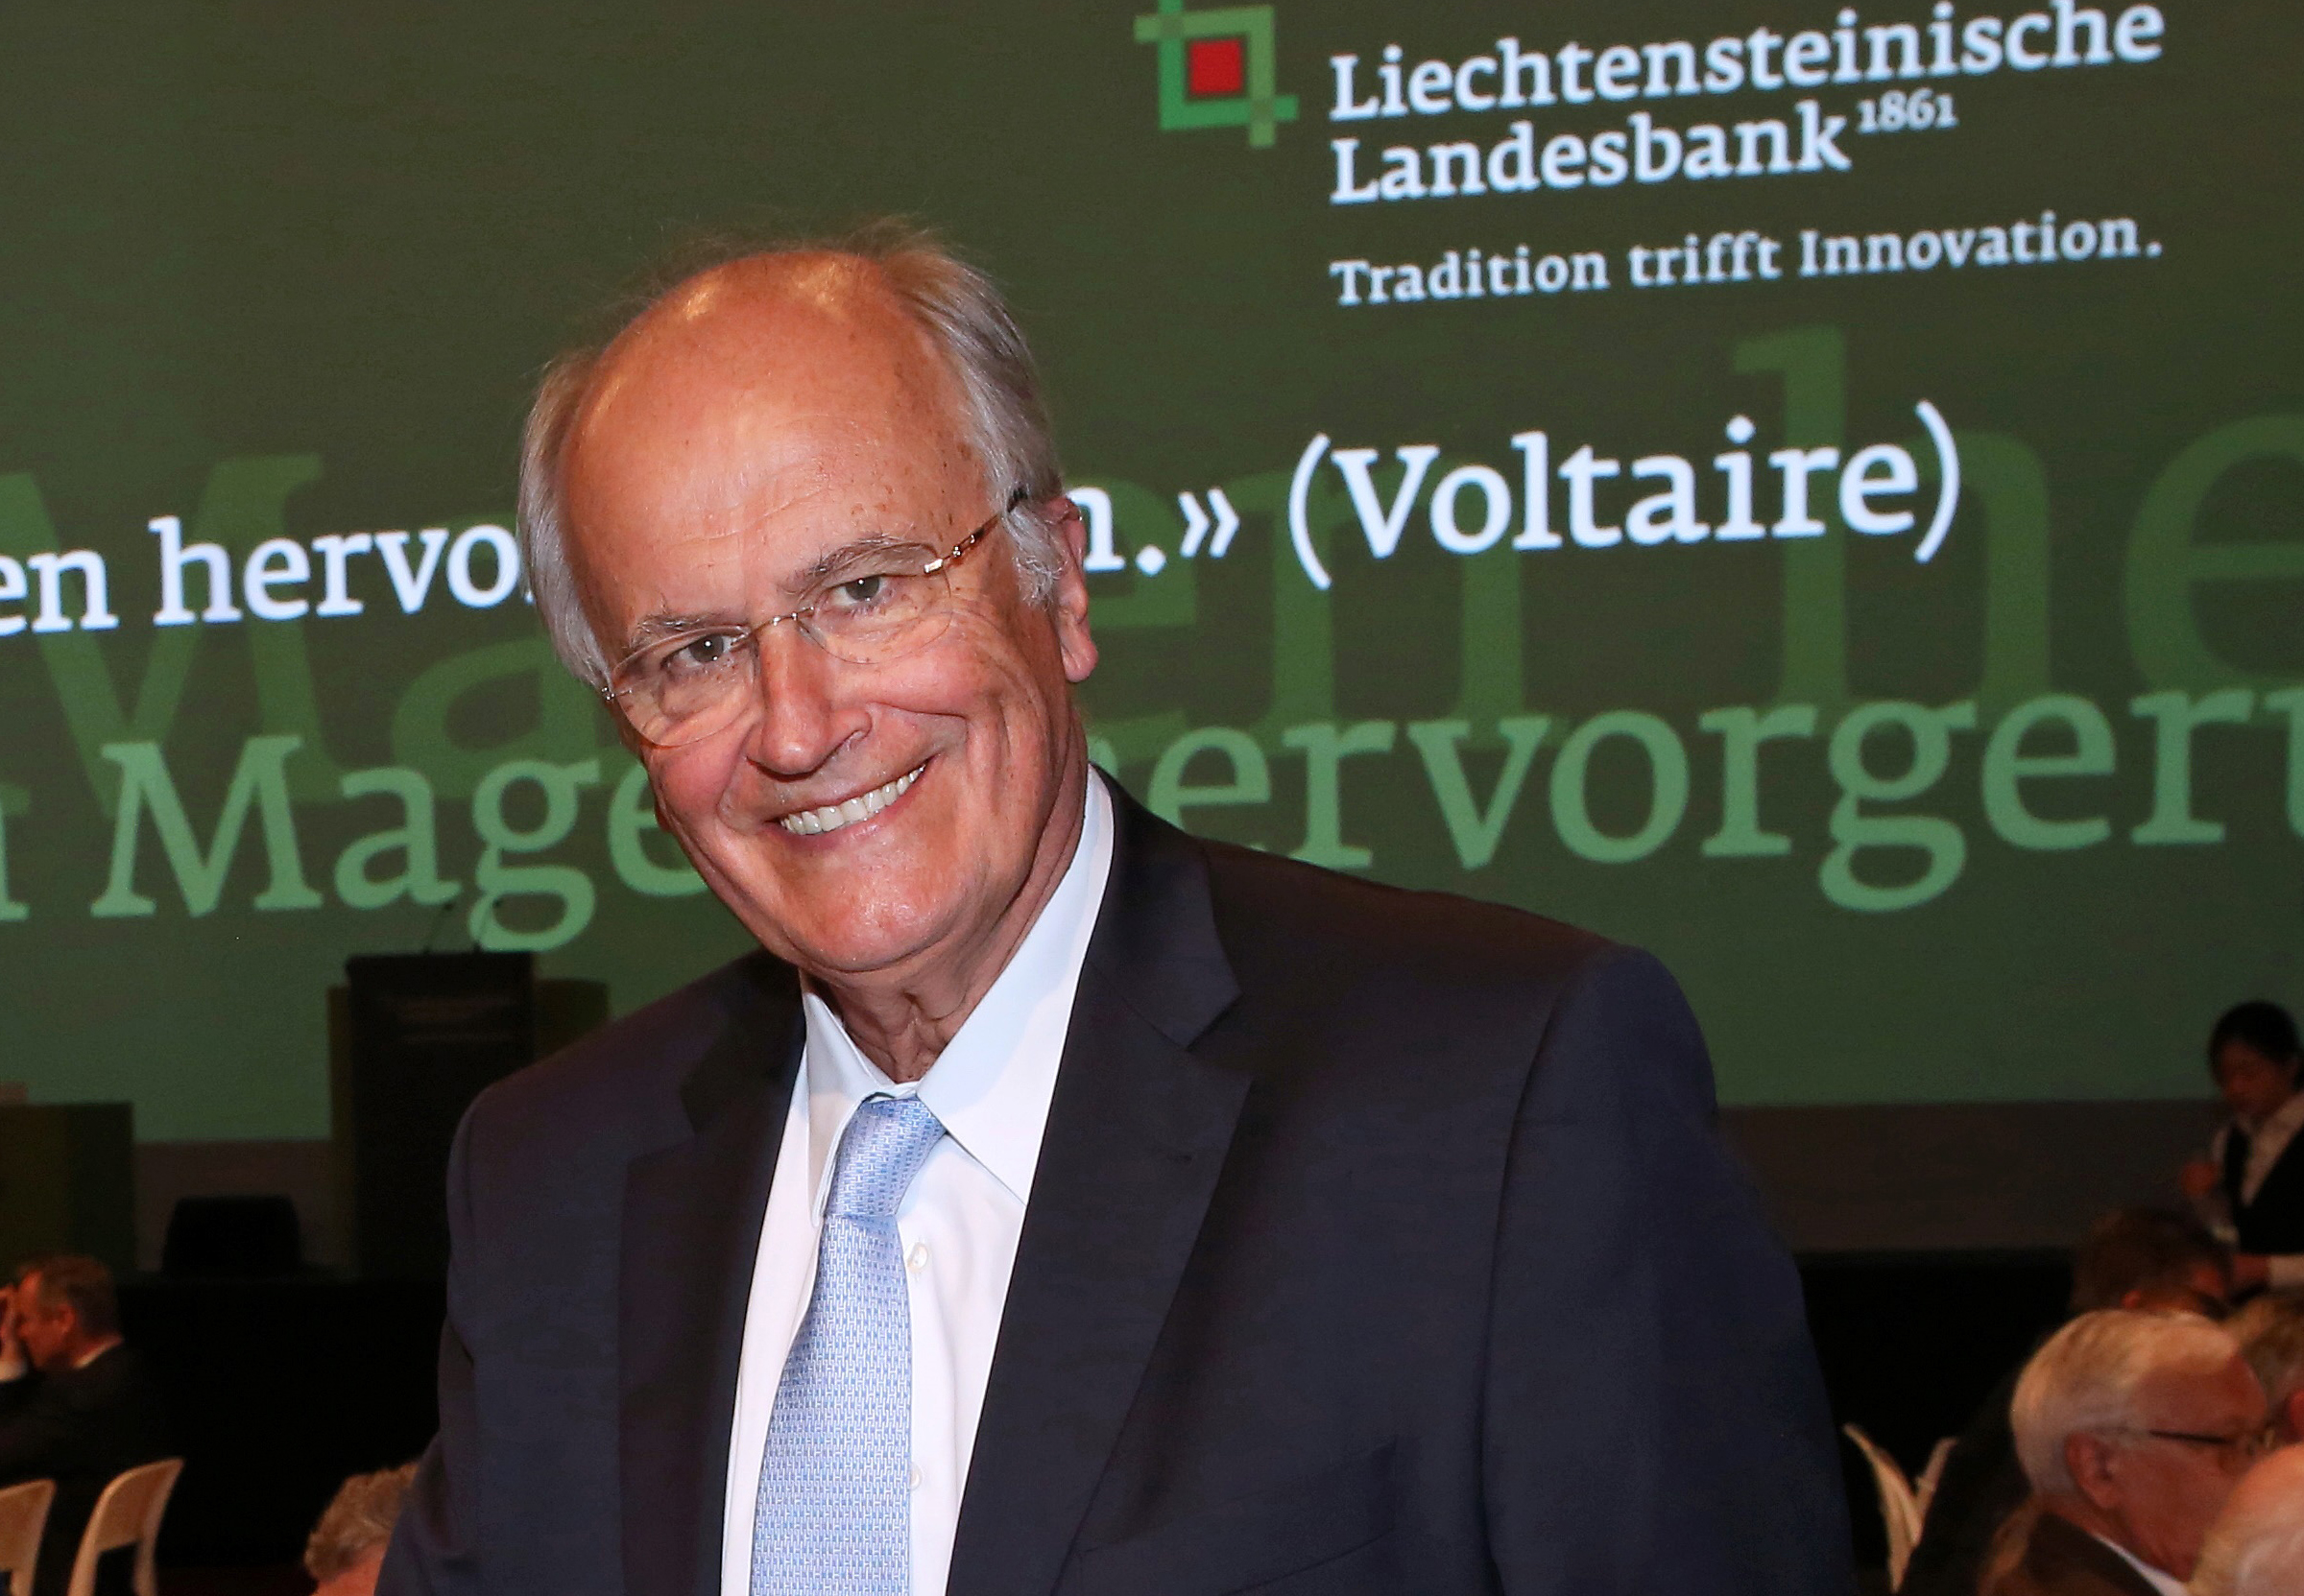 Österreichischer Top-Banker in Verwaltungsrat der LLB gewählt